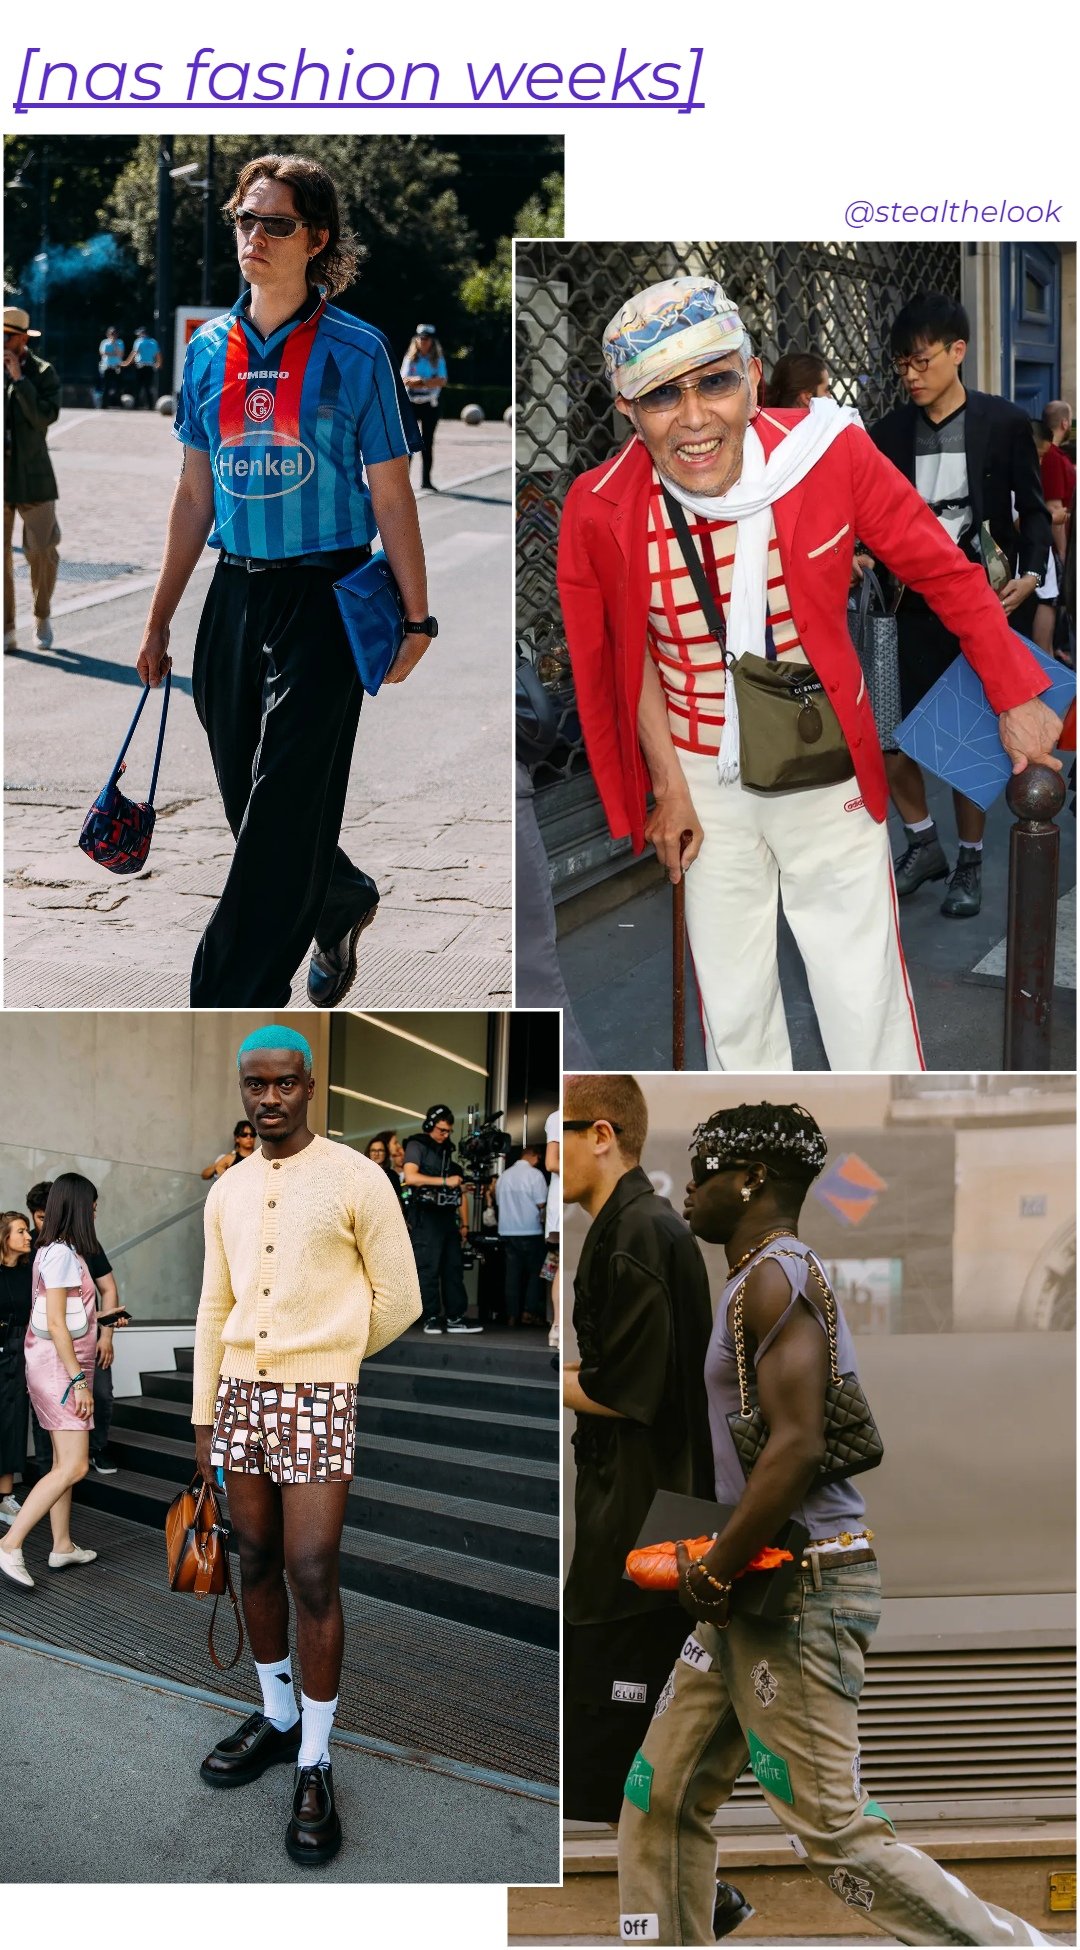 homens  - roupas diversas - homens usando bolsas - verão - colagem de imagens - https://stealthelook.com.br